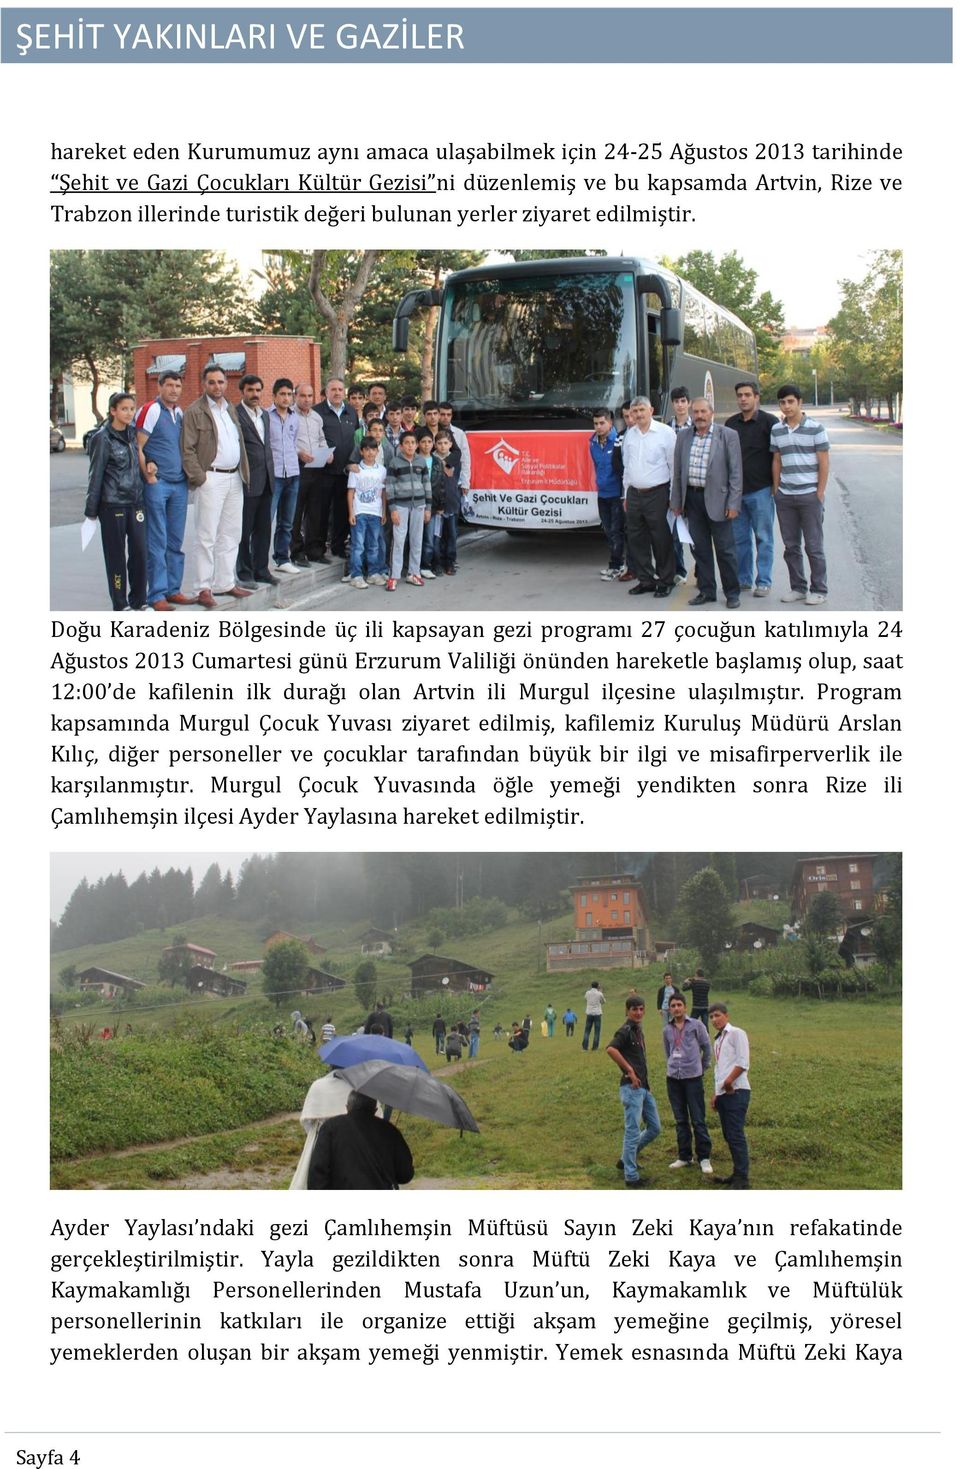 Doğu Karadeniz Bölgesinde üç ili kapsayan gezi programı 27 çocuğun katılımıyla 24 Ağustos 2013 Cumartesi günü Erzurum Valiliği önünden hareketle başlamış olup, saat 12:00 de kafilenin ilk durağı olan